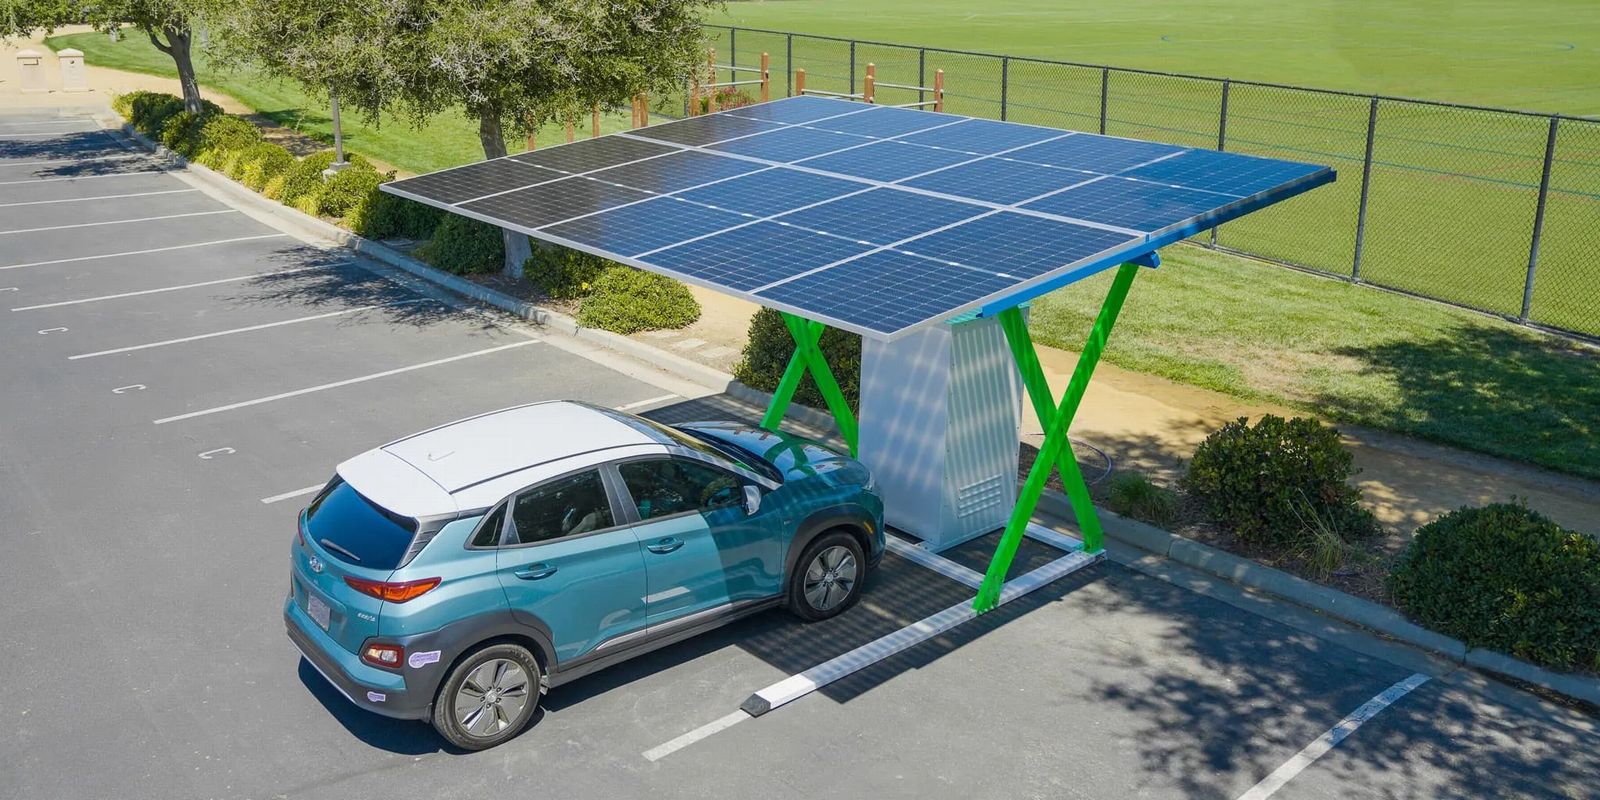 Cet auvent solaire pourrait bientôt charger votre voiture à la maison